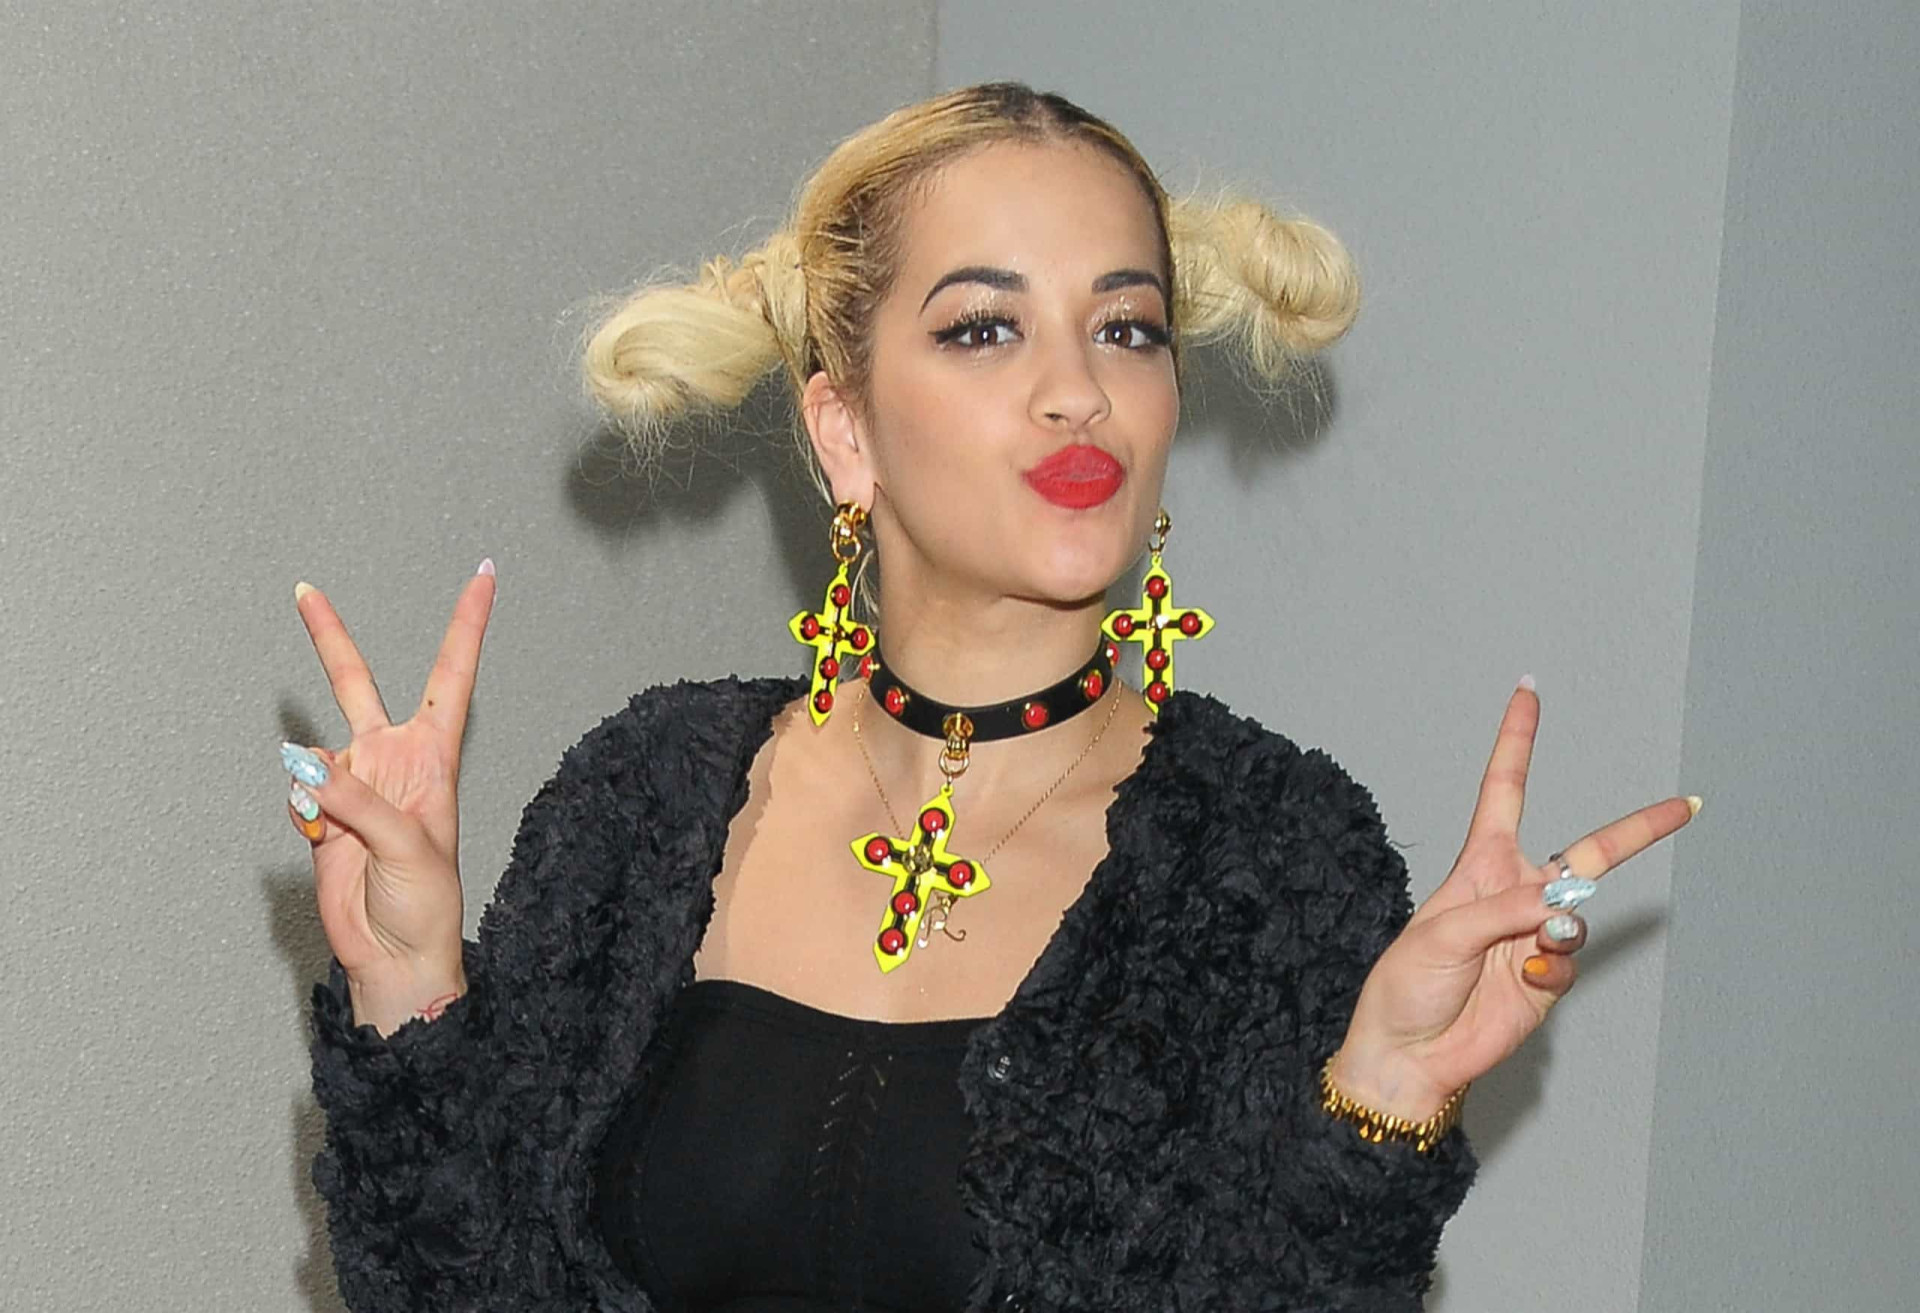 <p>La chanteuse anglaise Rita Ora est photographiée ici avec des boucles d'oreilles et un collier en forme de croix colorées, lors de sa visite à Tokyo en 2013.</p><p>Tu pourrais aussi aimer:<a href="https://www.starsinsider.com/n/349756?utm_source=msn.com&utm_medium=display&utm_campaign=referral_description&utm_content=452357v2"> Ces artistes ont empêché Trump d'utiliser leurs titres </a></p>